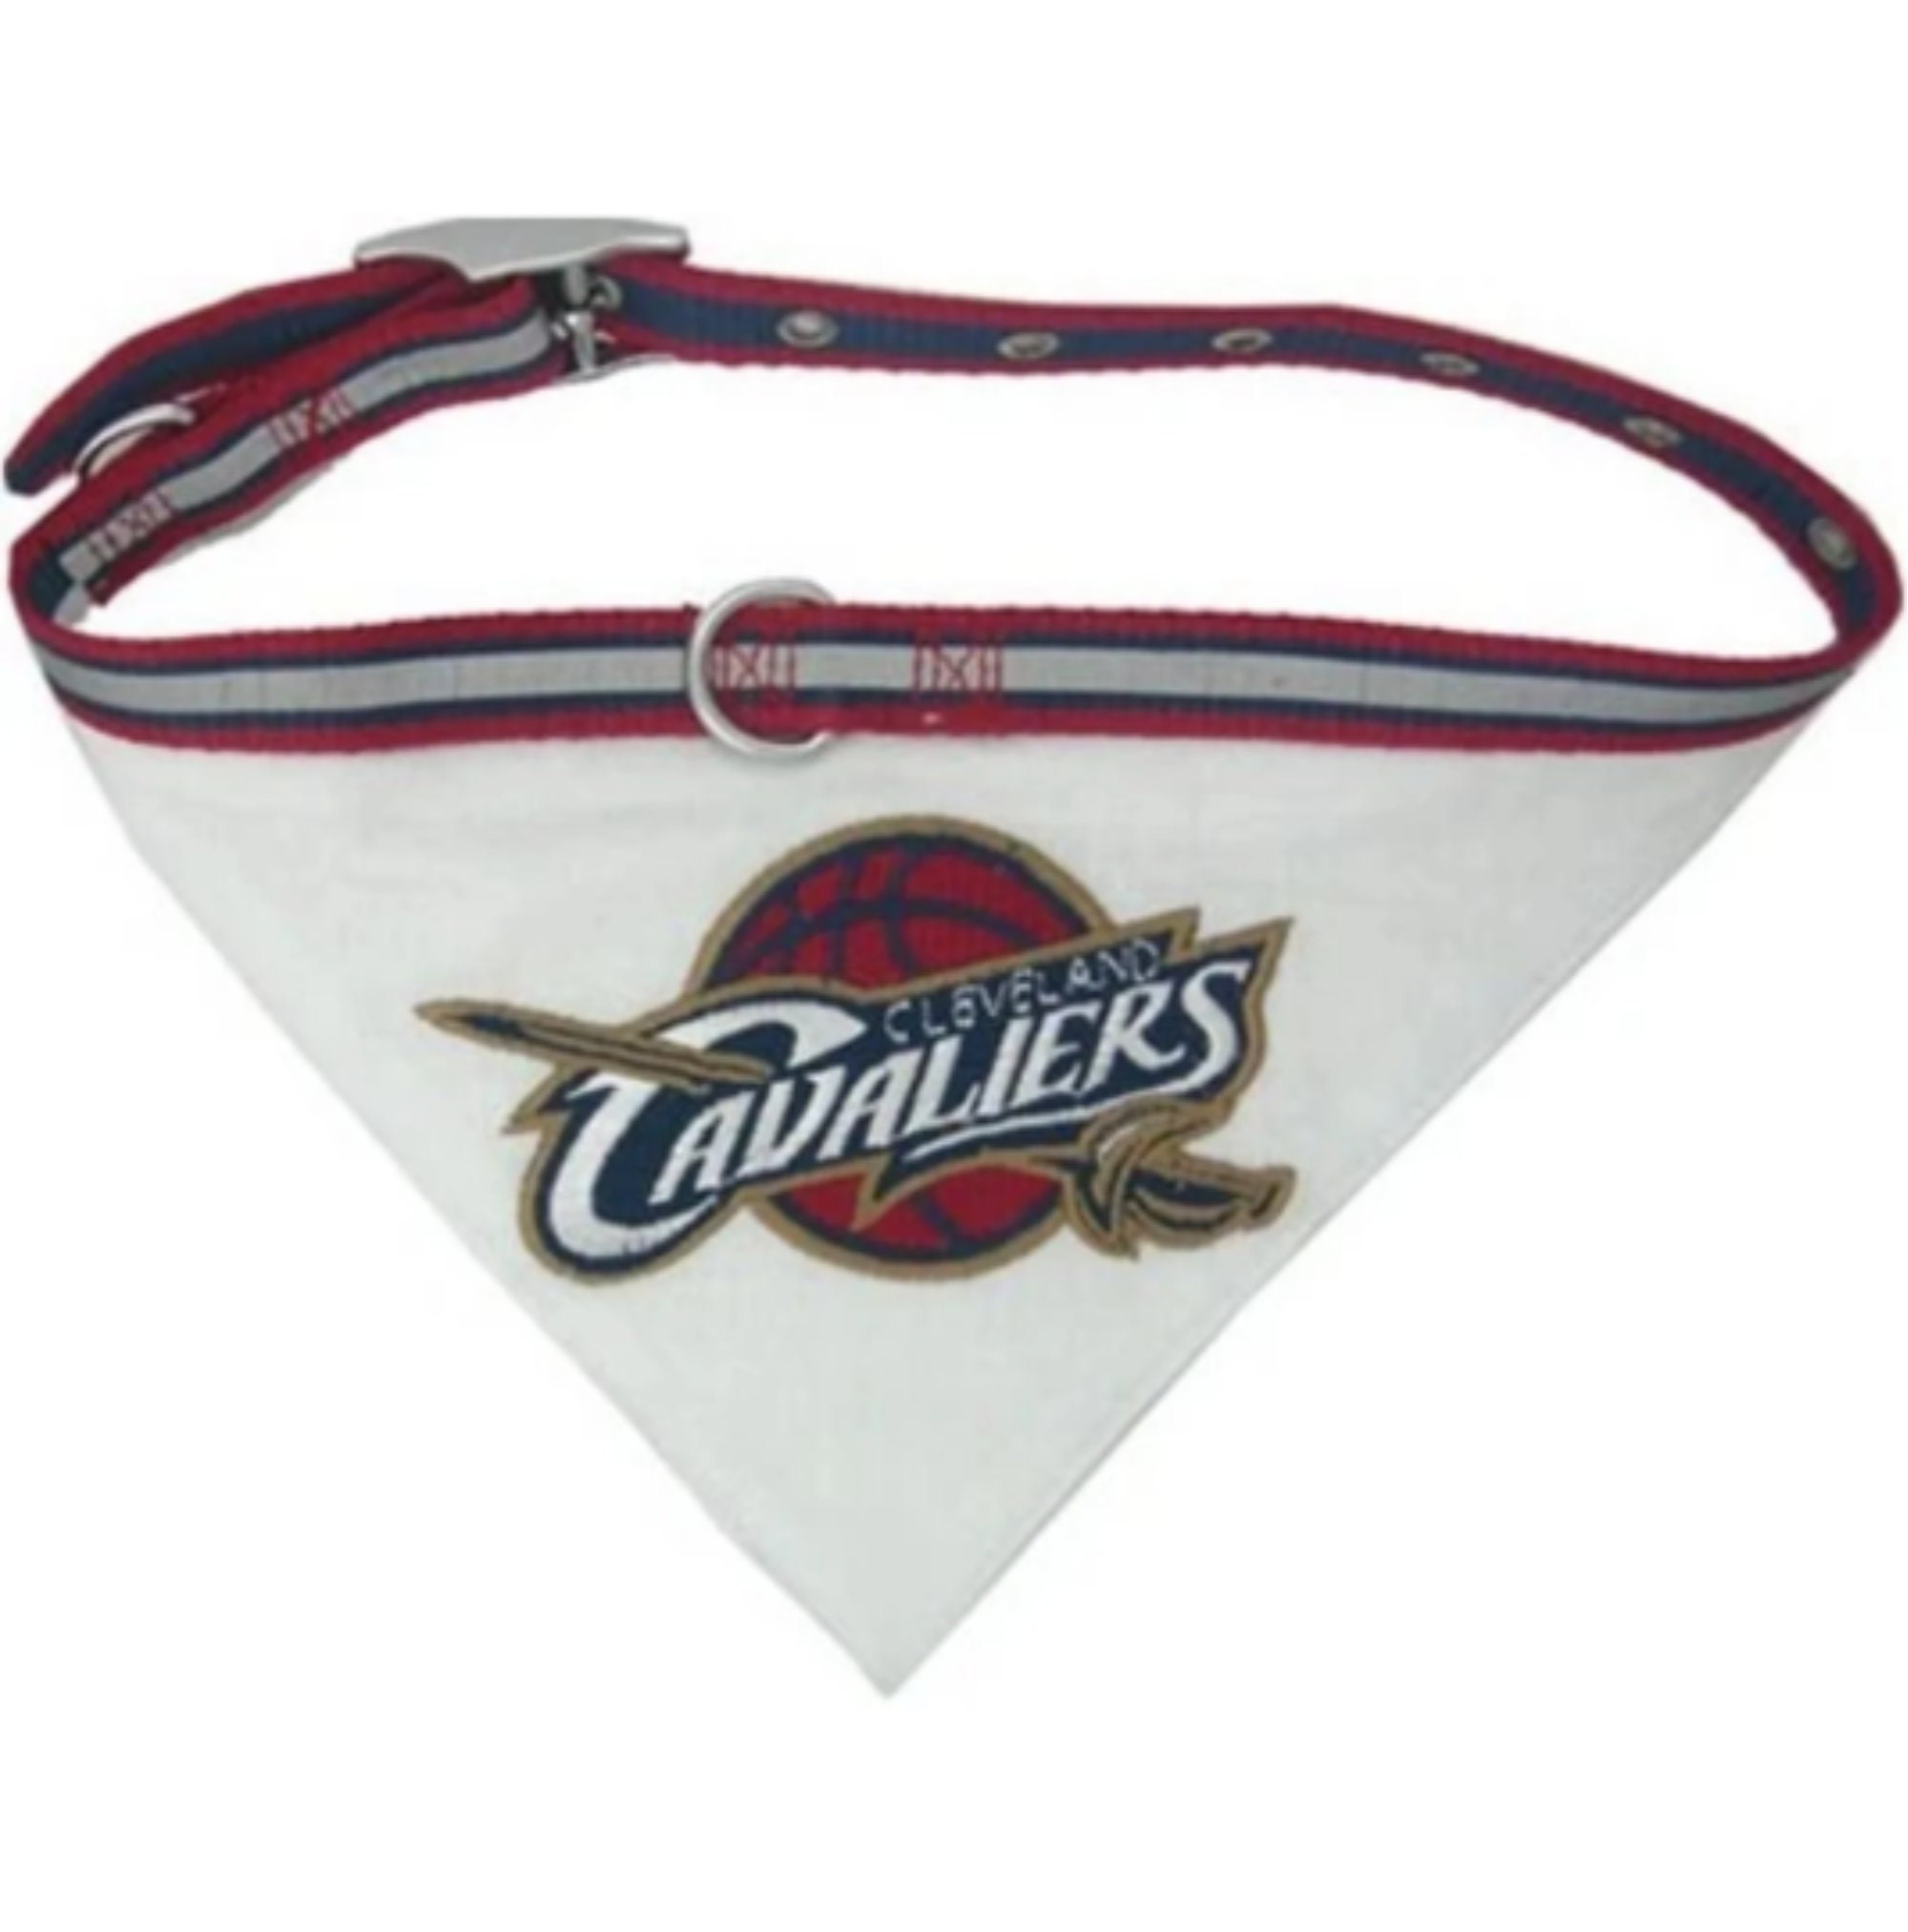 Cleveland Cavaliers Blimp Ornament - Item 141373